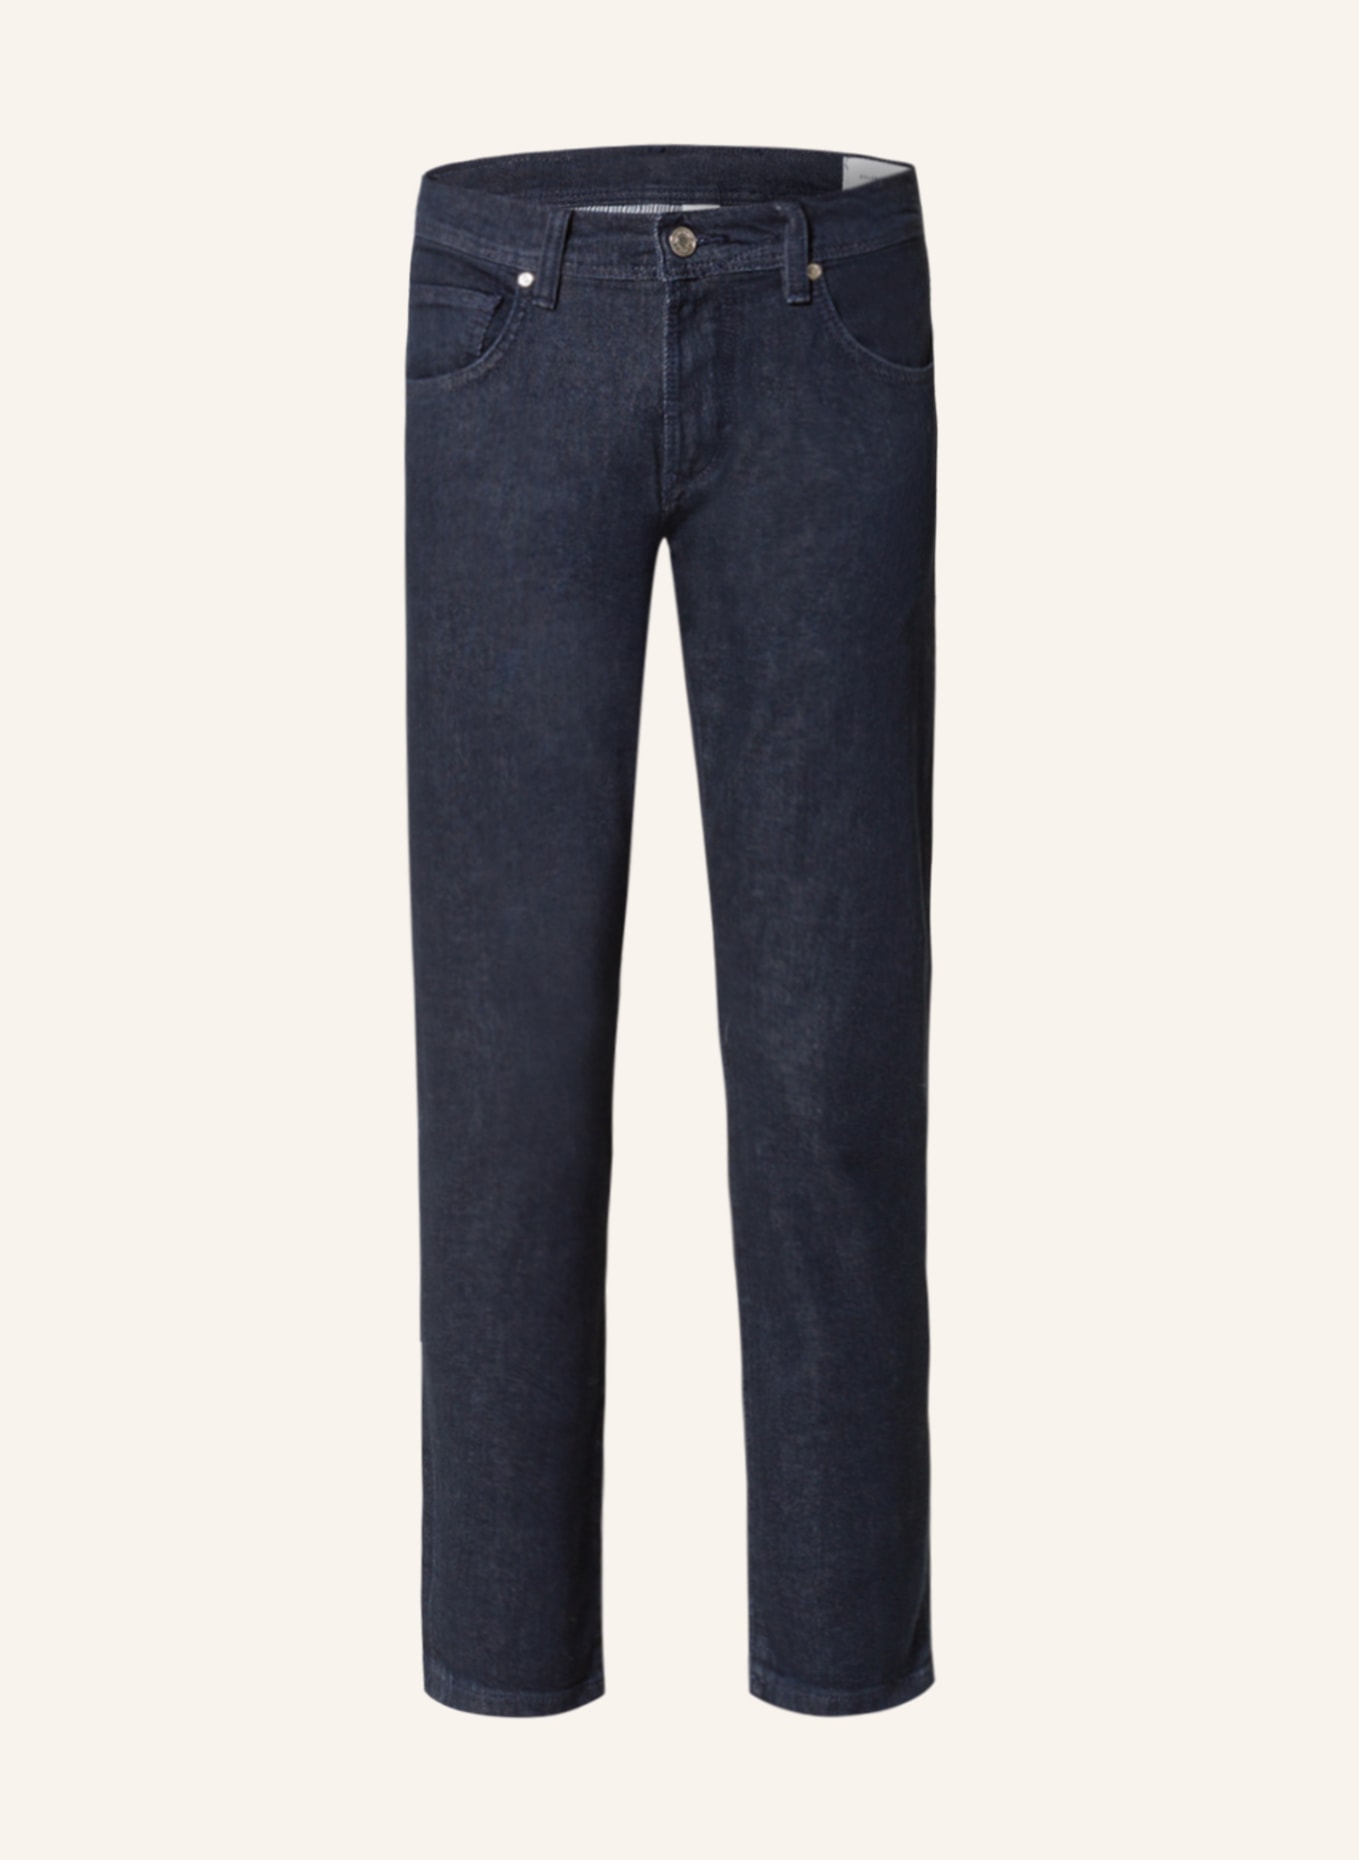 BALDESSARINI Jeans Tapered Fit, Farbe: 6810 dark blue raw (Bild 1)